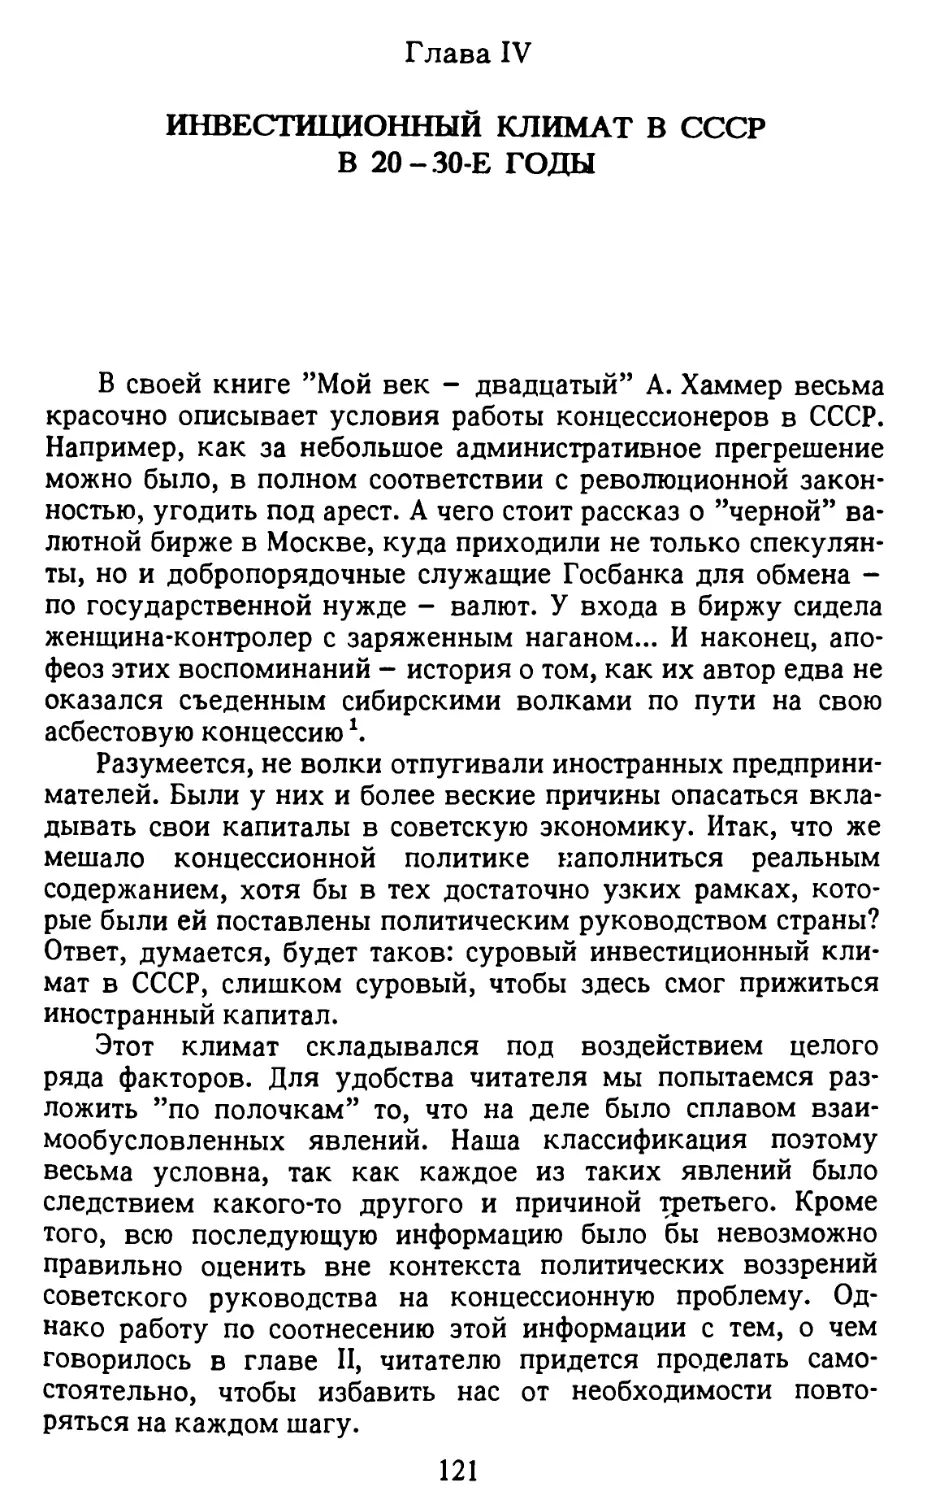 ГЛАВА IV. Инвестиционный климат в СССР в 20-30-е годы